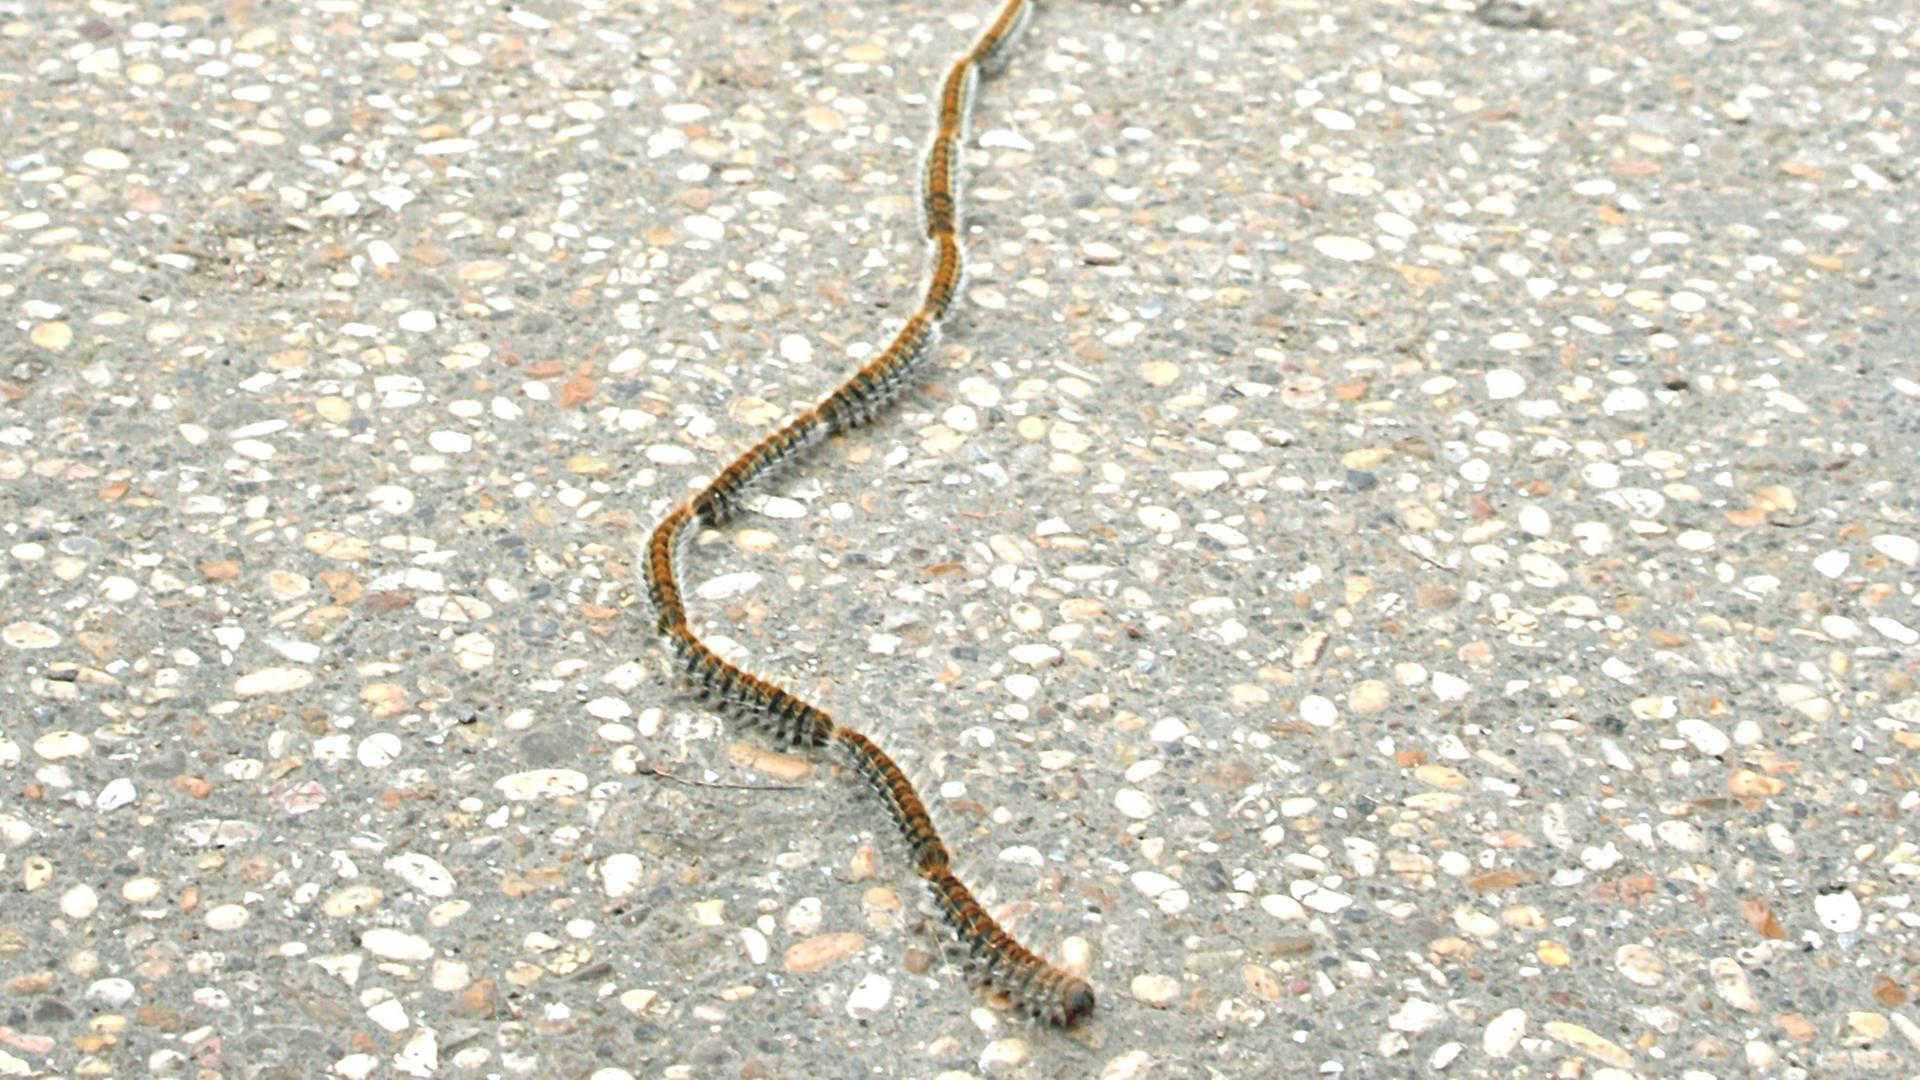 Die Raupen der unscheinbaren Prozessionsspinner (Thaumetopoea pityocampa) gehen als Raupenschlange getarnt im Konvoi auf Nahrungssuche, ihre Brennhaare verursachen einen unangenehmen Juckreiz.